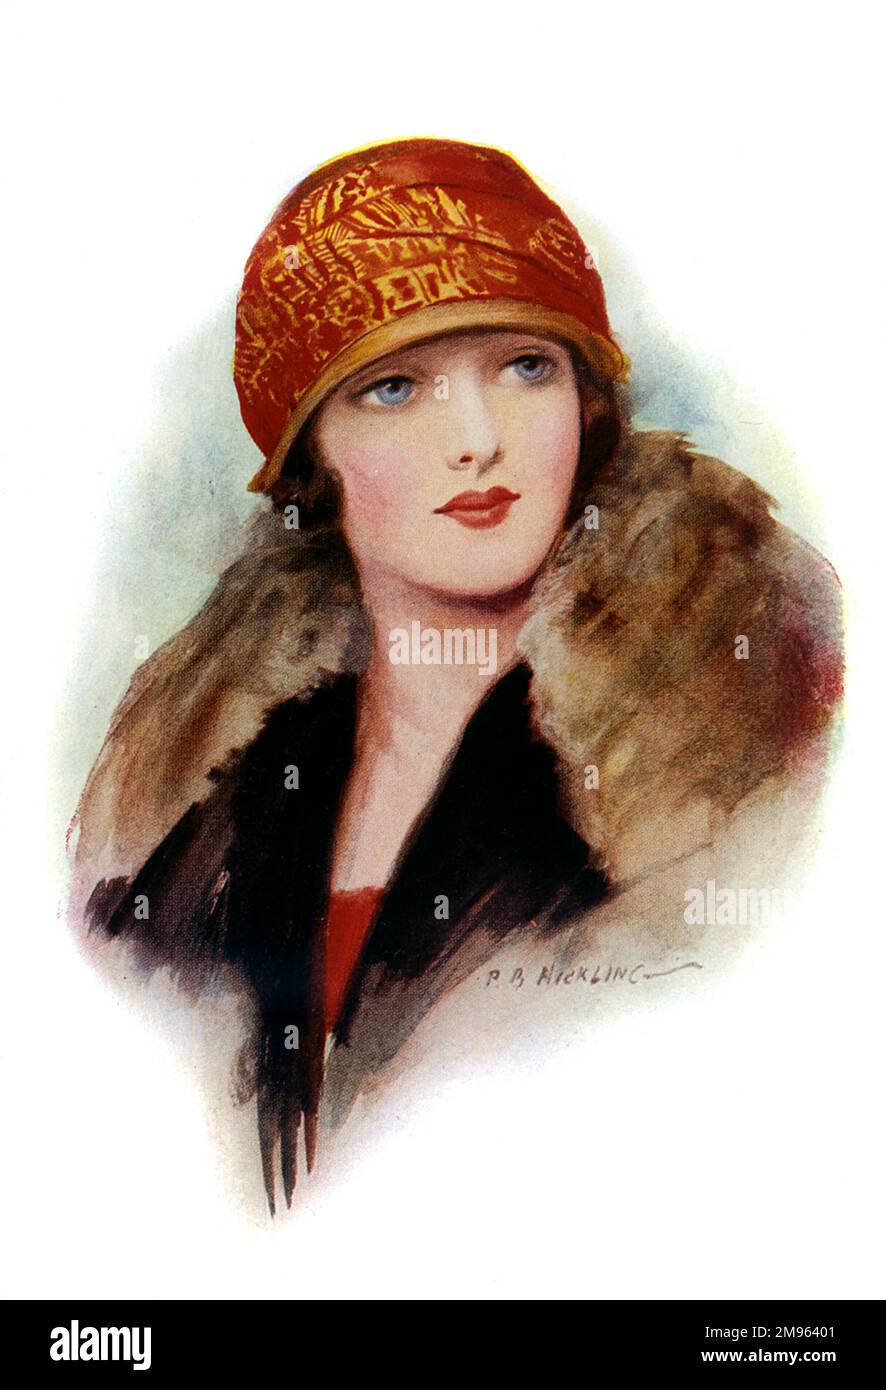 Eine junge Frau mit großen Augen und leuchtend roten Lippen trägt einen Mantel mit Pelzkragen und einen rot-goldenen Glockenhut mit winziger Krempe. Stockfoto